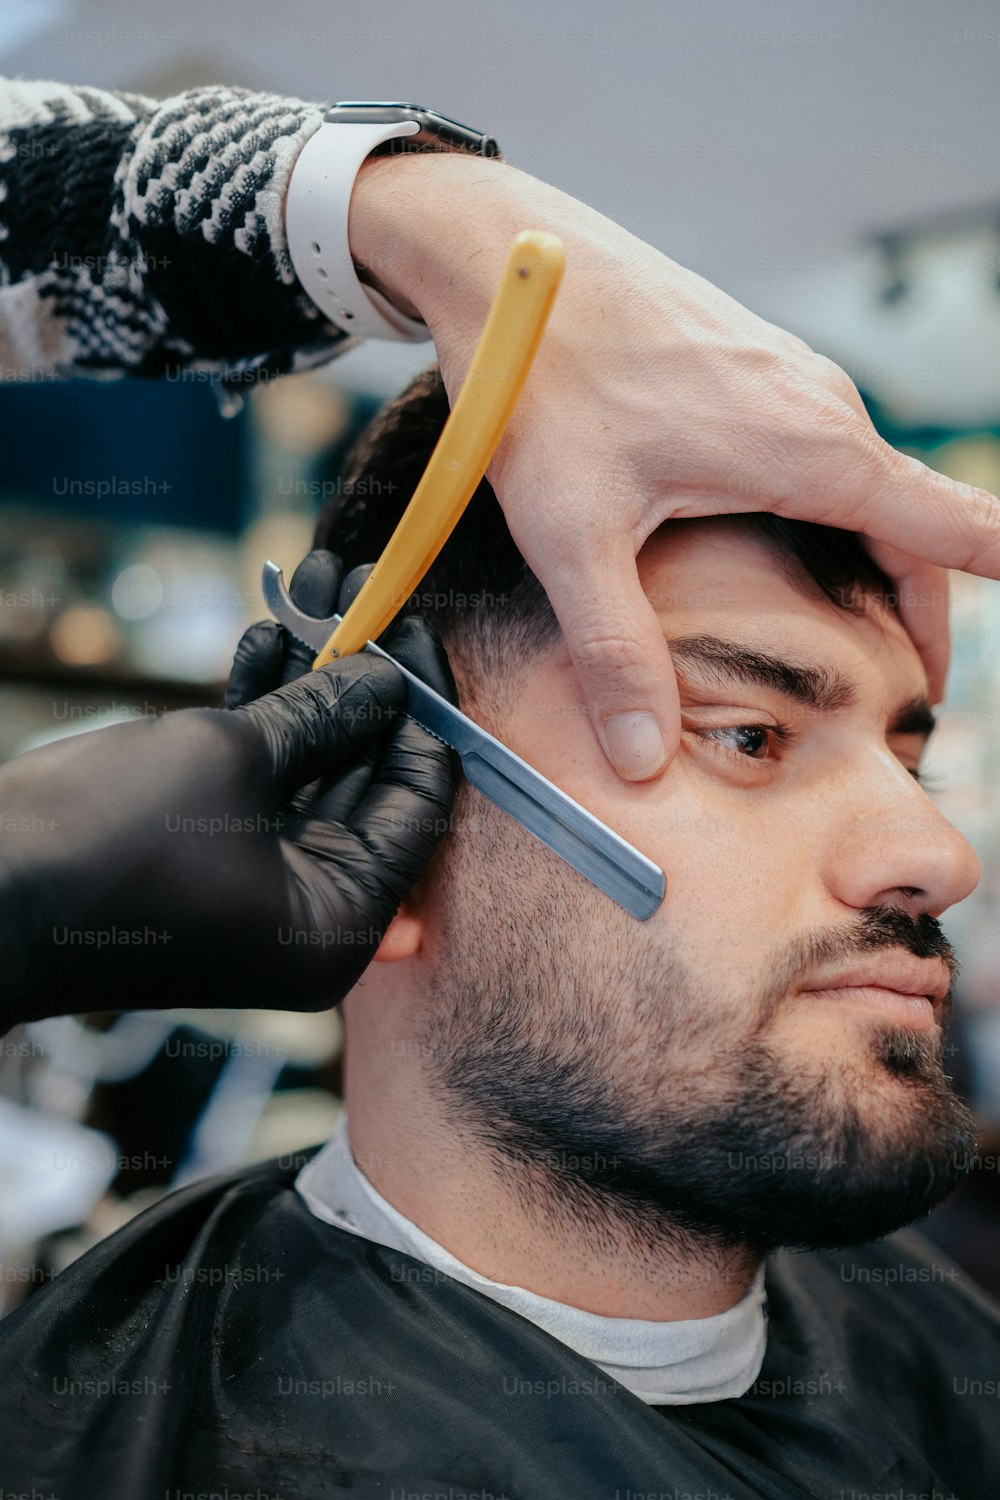 Un homme coupe les cheveux d’un autre homme avec une paire de ciseaux